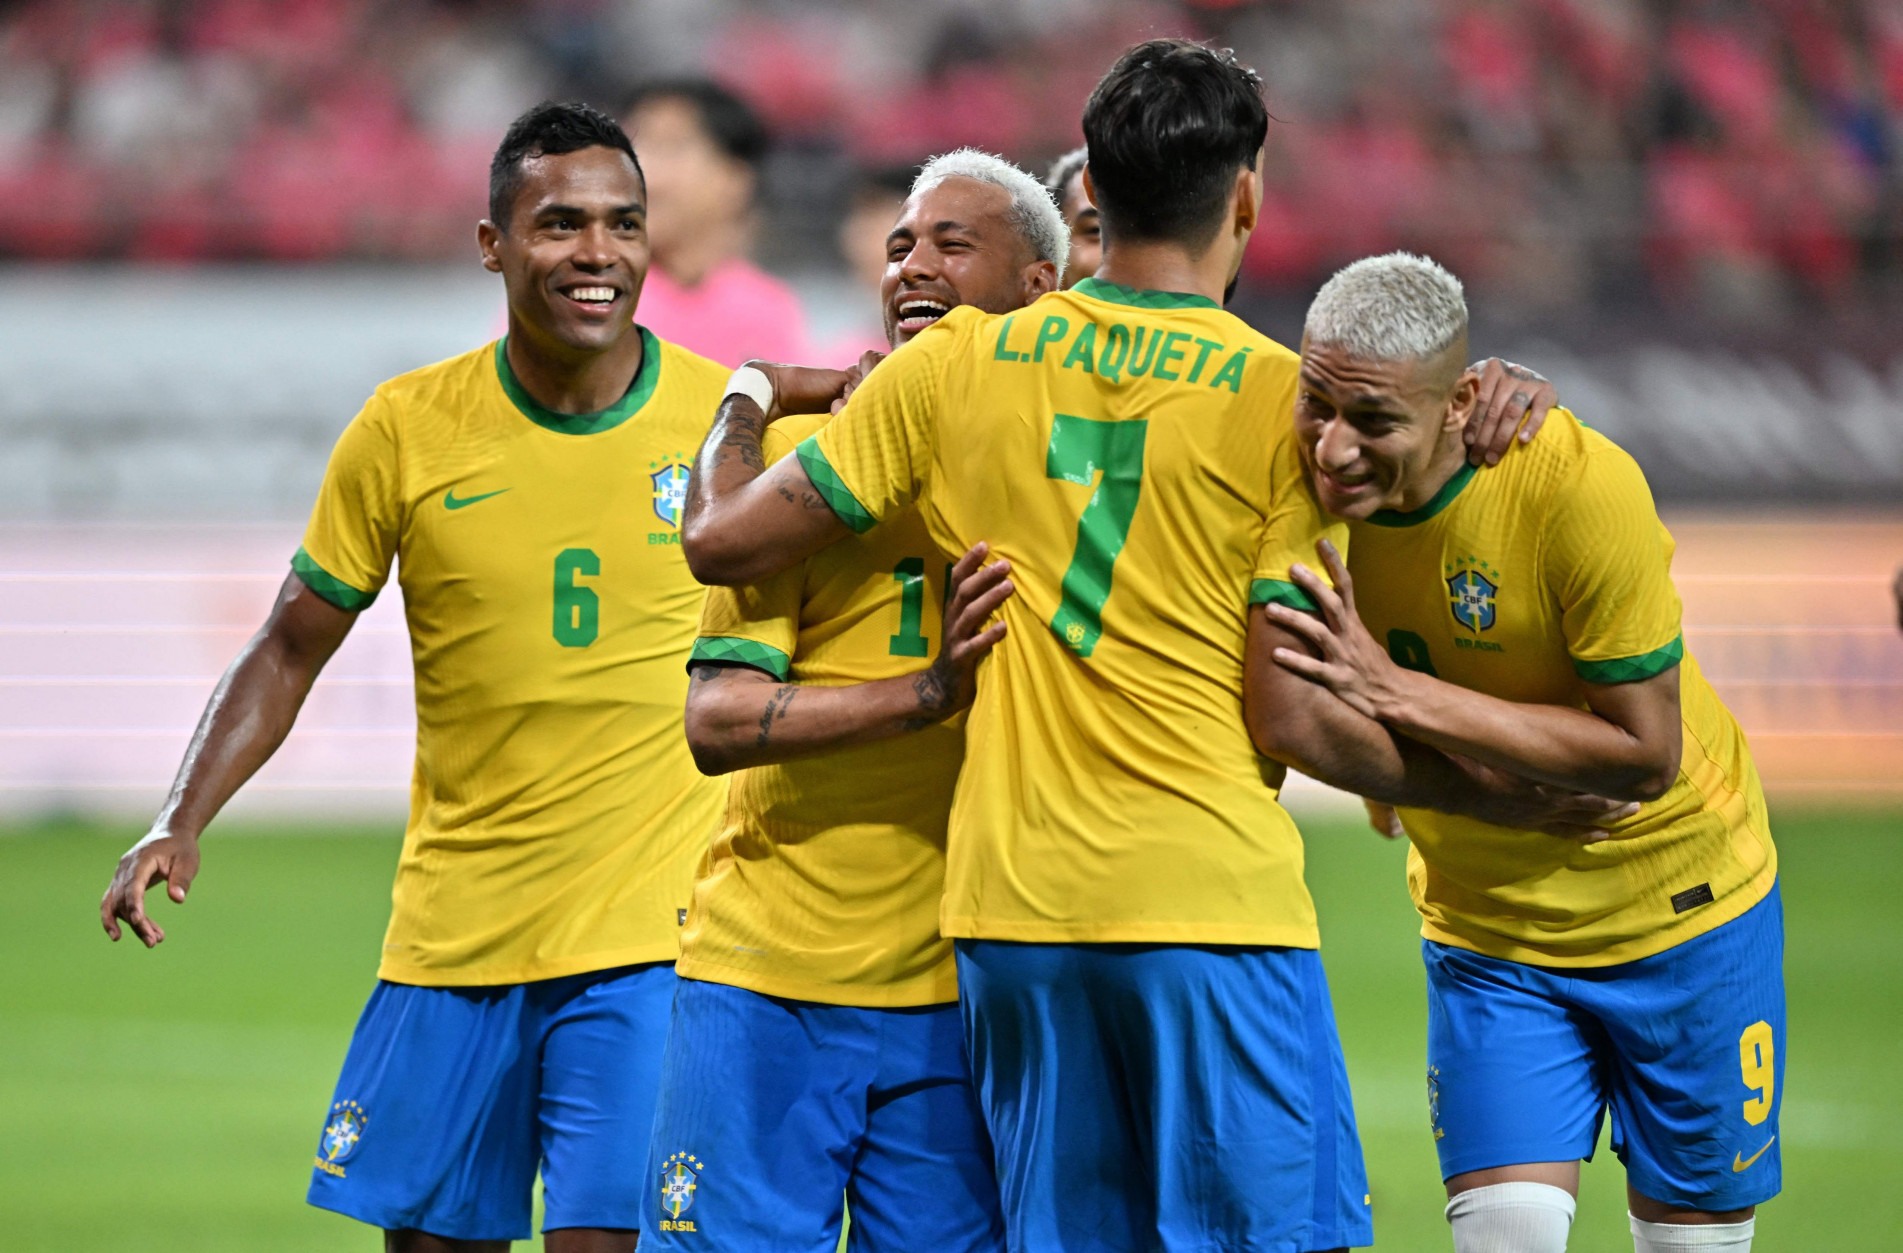 Neymar, recuperado de um pisão no pé, sofrido no dia anterior, foi um dos destaques da partida